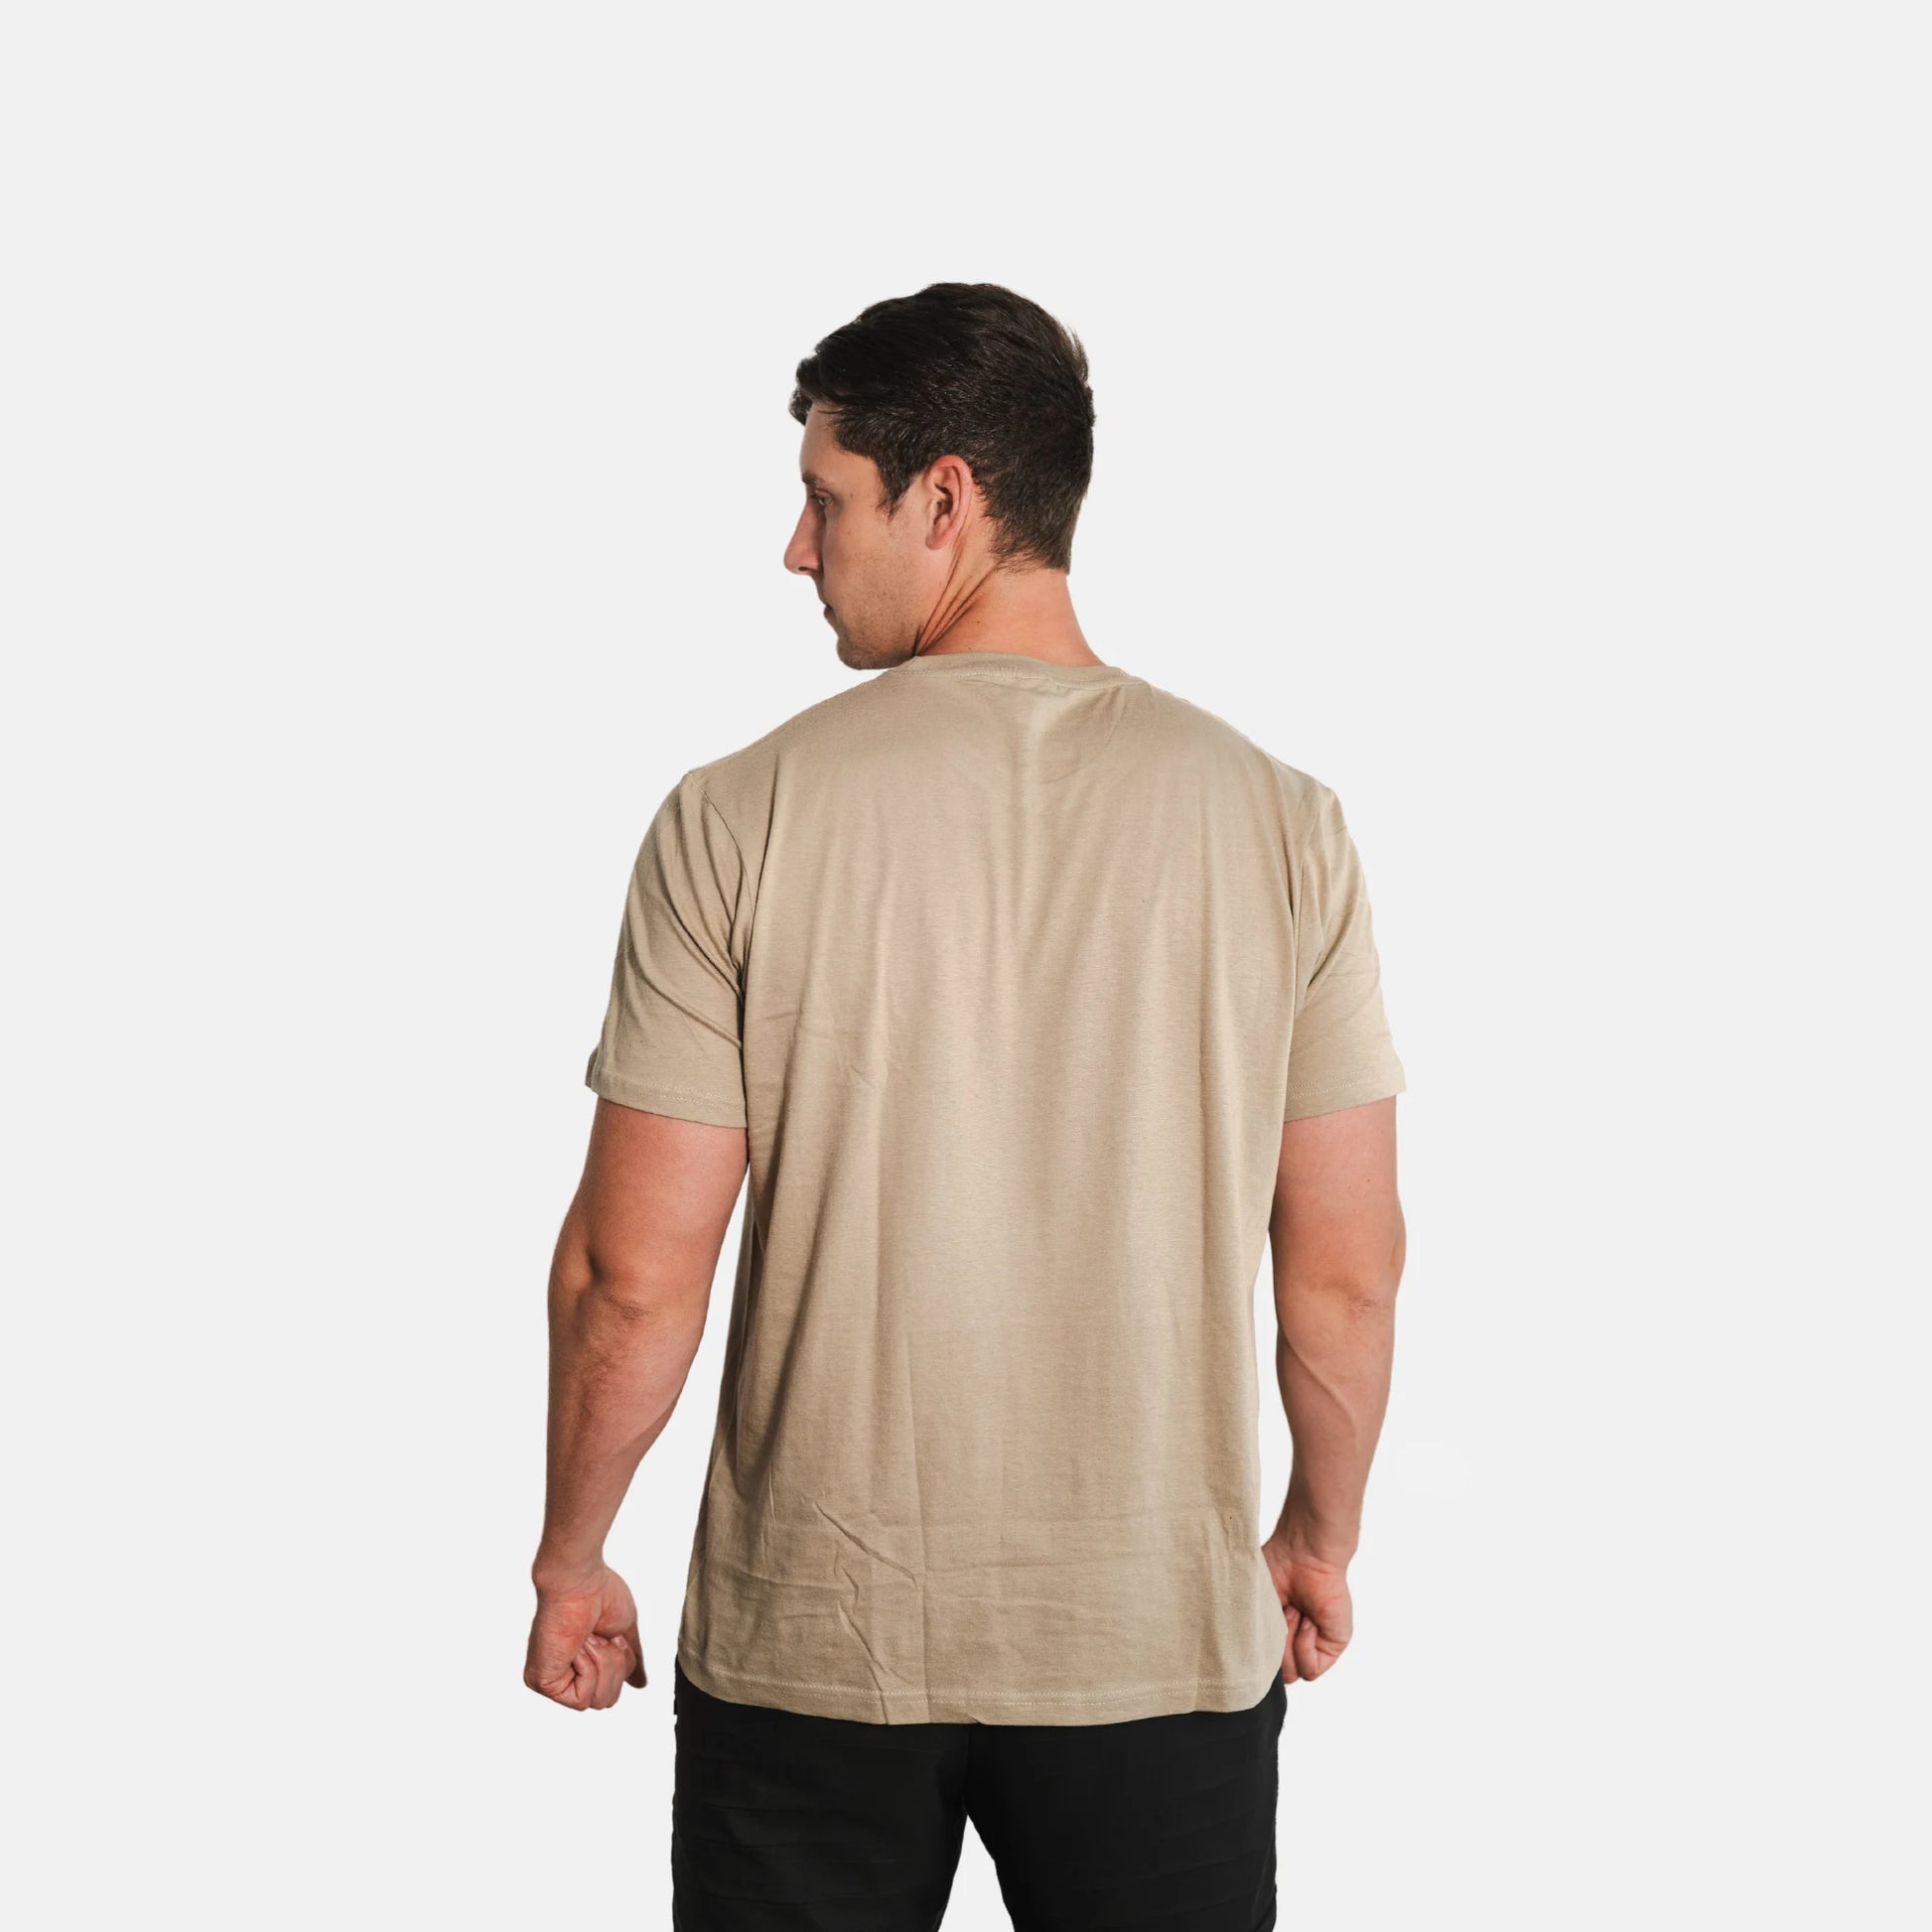 usn-miltary-shirt-american-flag-khaki-back-model